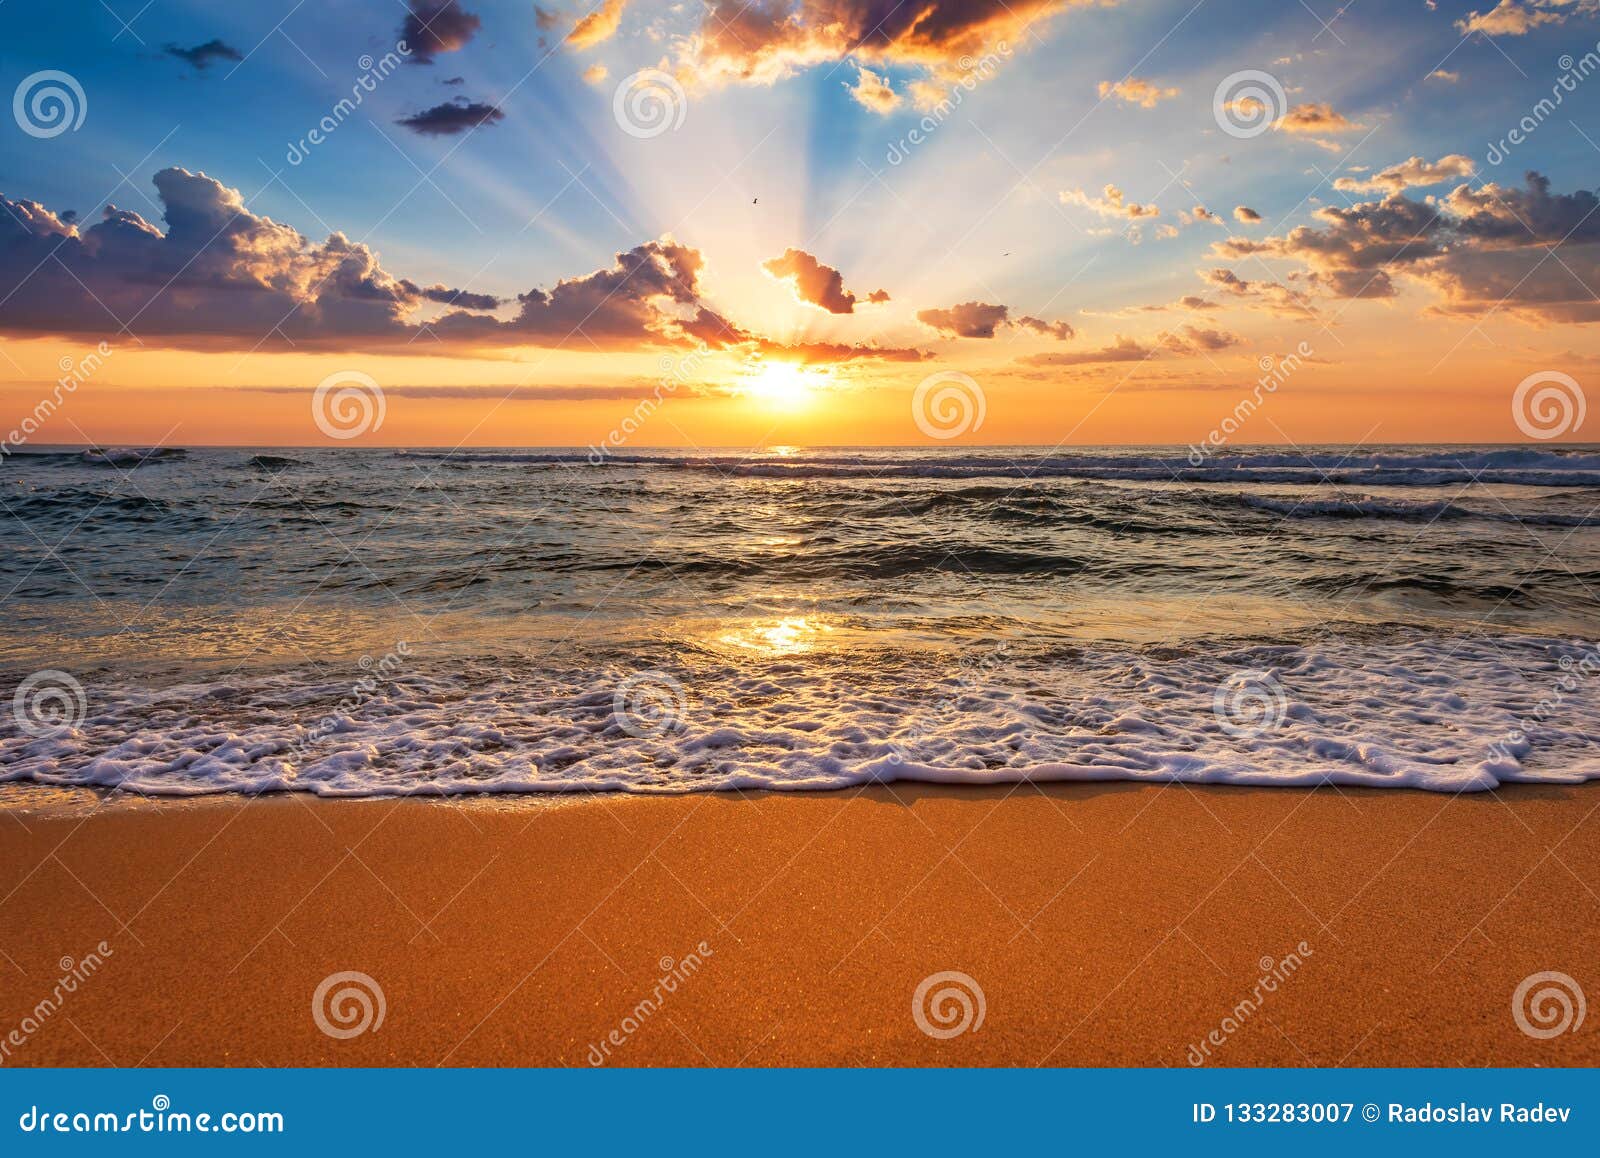 colorful ocean beach sunrise with deep blue sky and sun rays